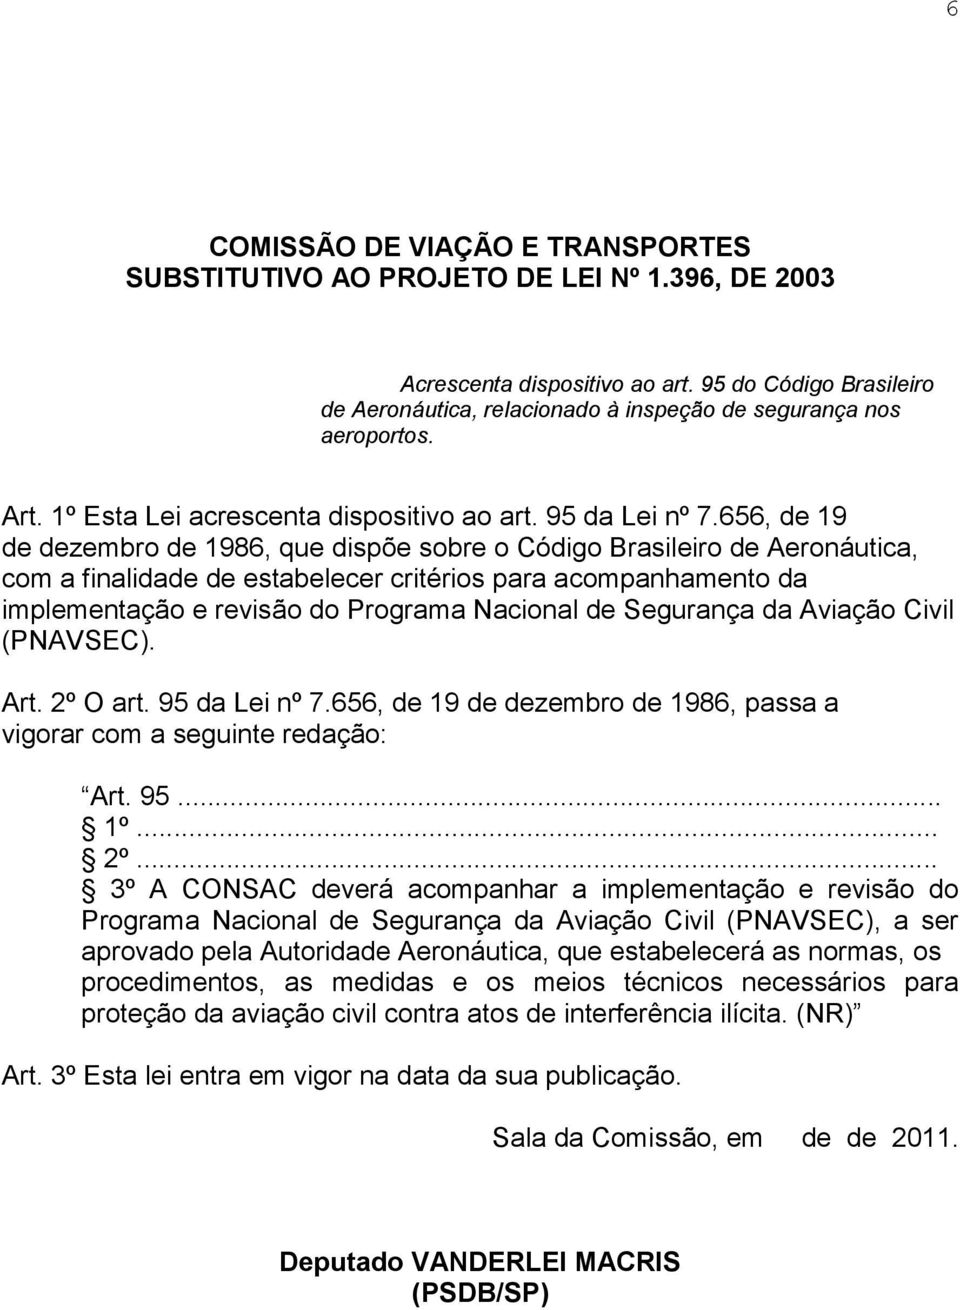 656, de 19 de dezembro de 1986, que dispõe sobre o Código Brasileiro de Aeronáutica, com a finalidade de estabelecer critérios para acompanhamento da implementação e revisão do Programa Nacional de